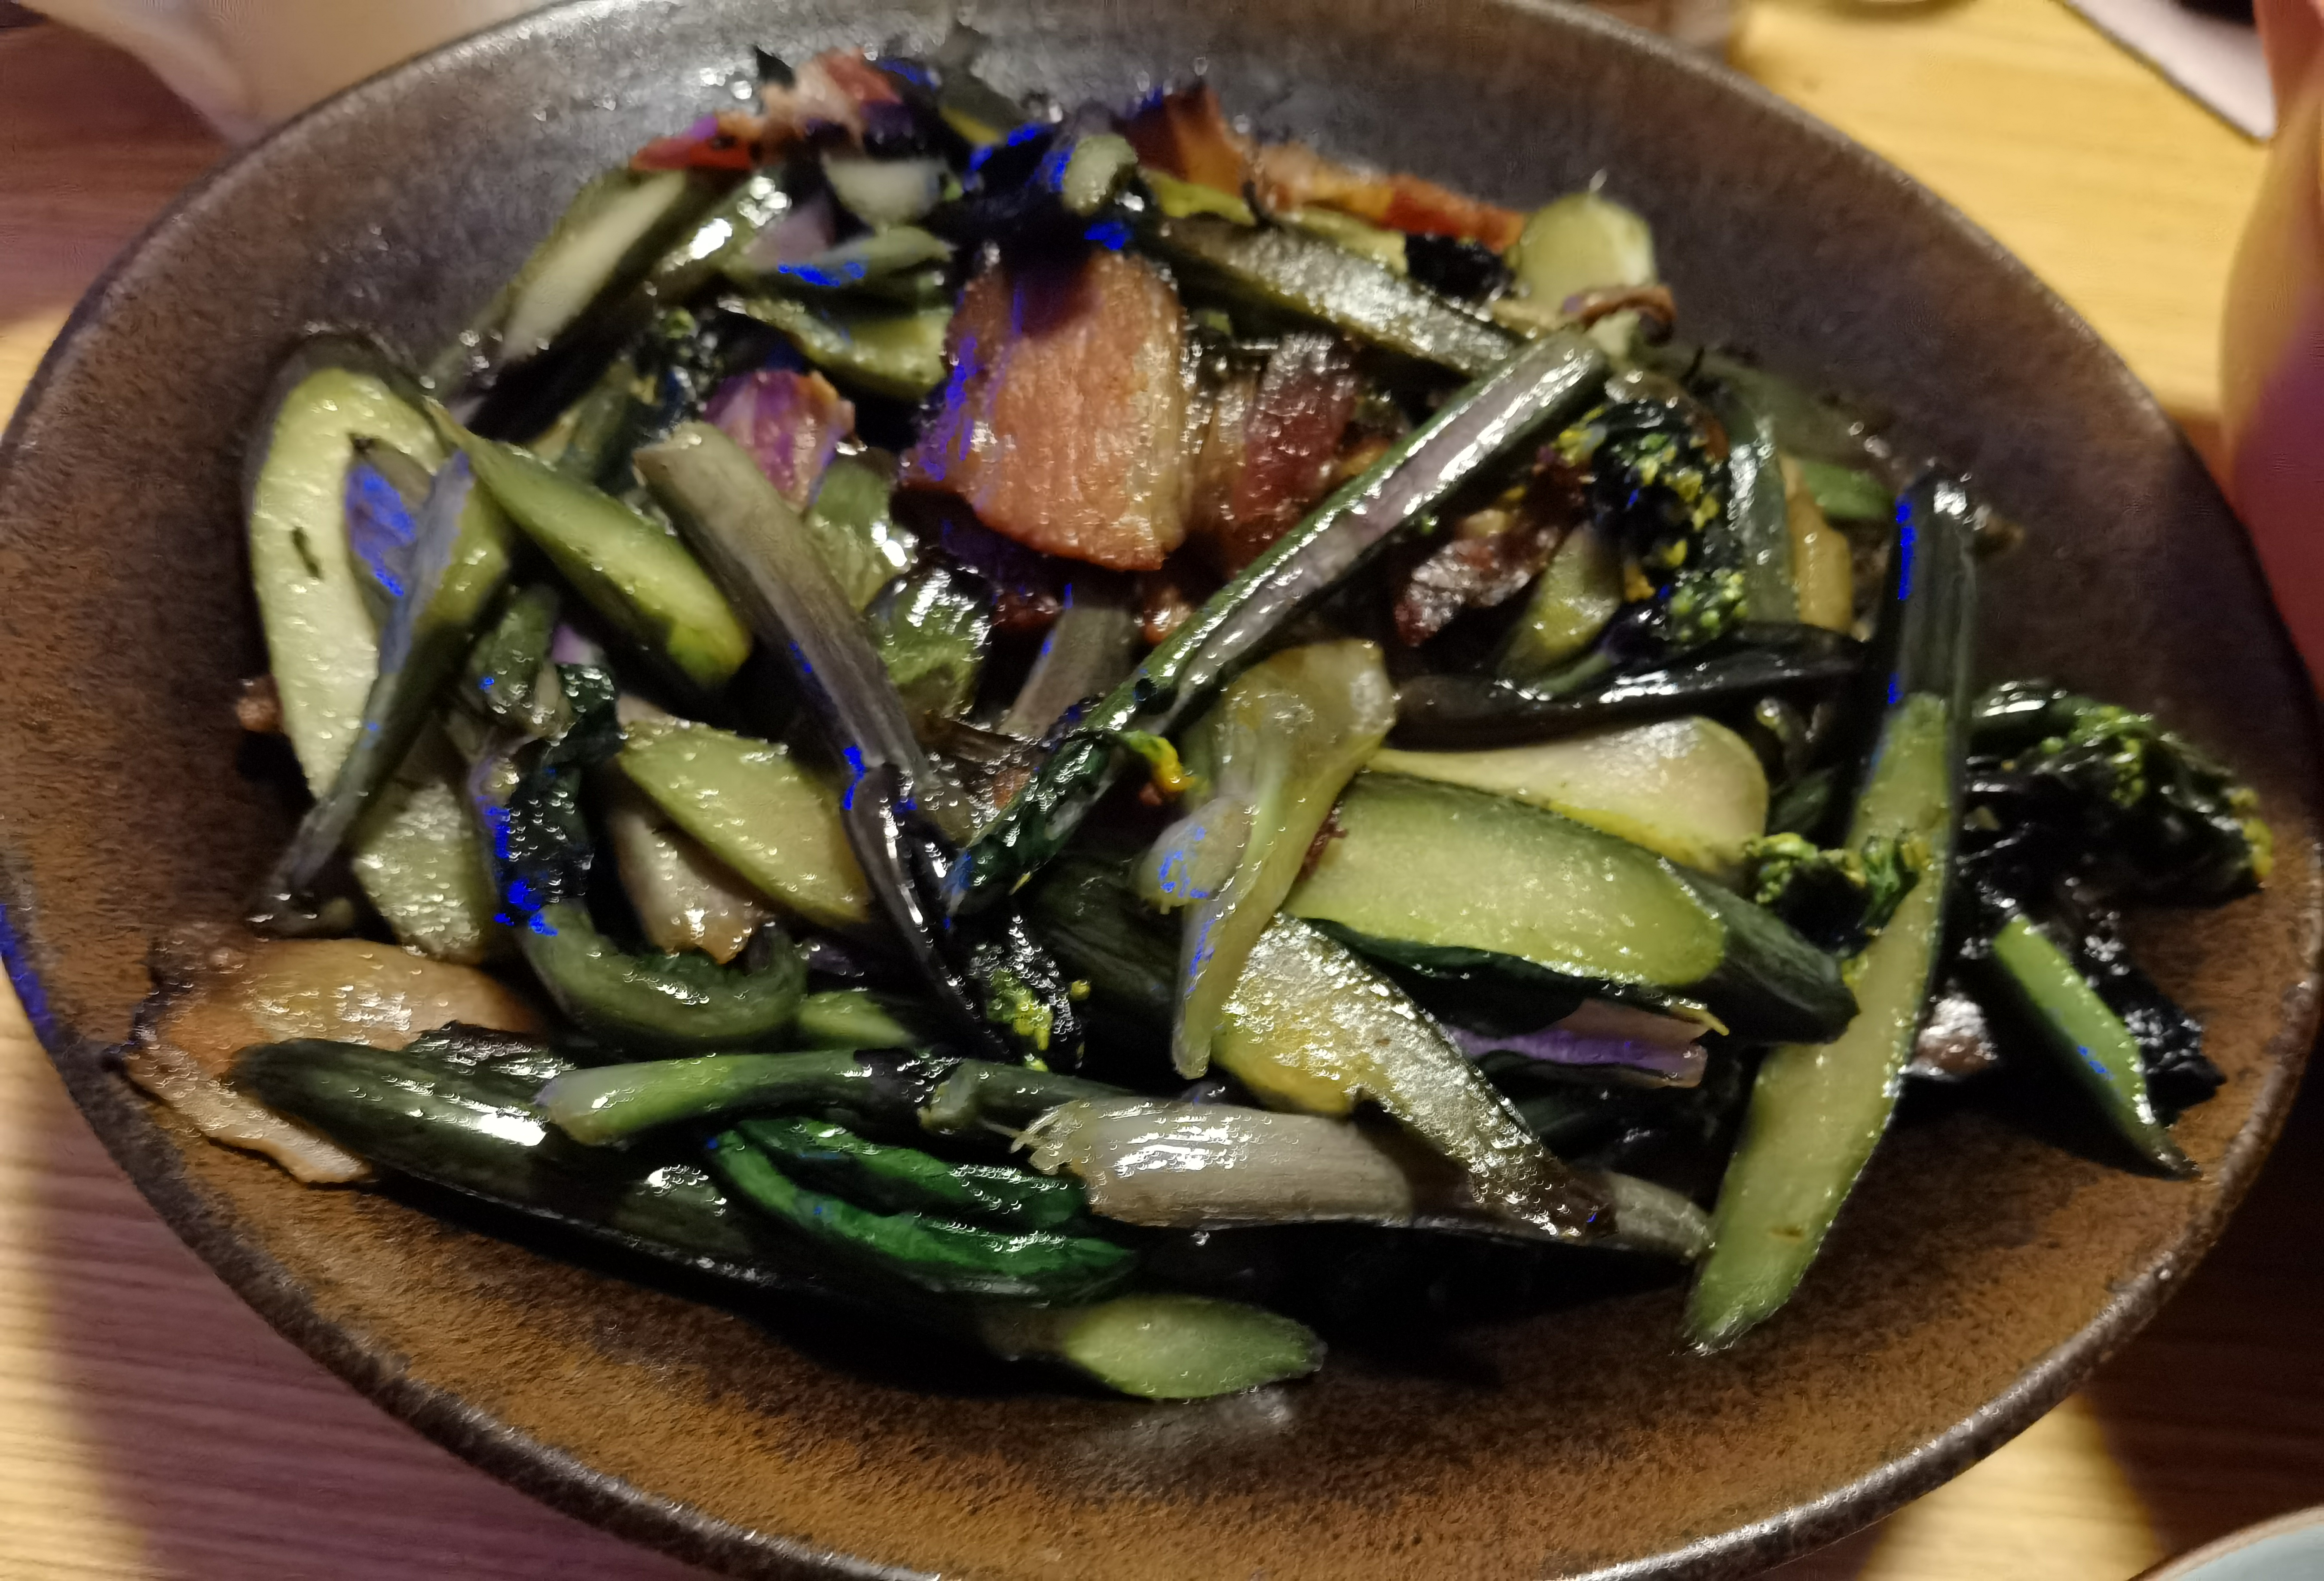 晚饭在家用腊肉炒了菜苔,热了一个盆菜菜苔是湖北朋友快递来的,有